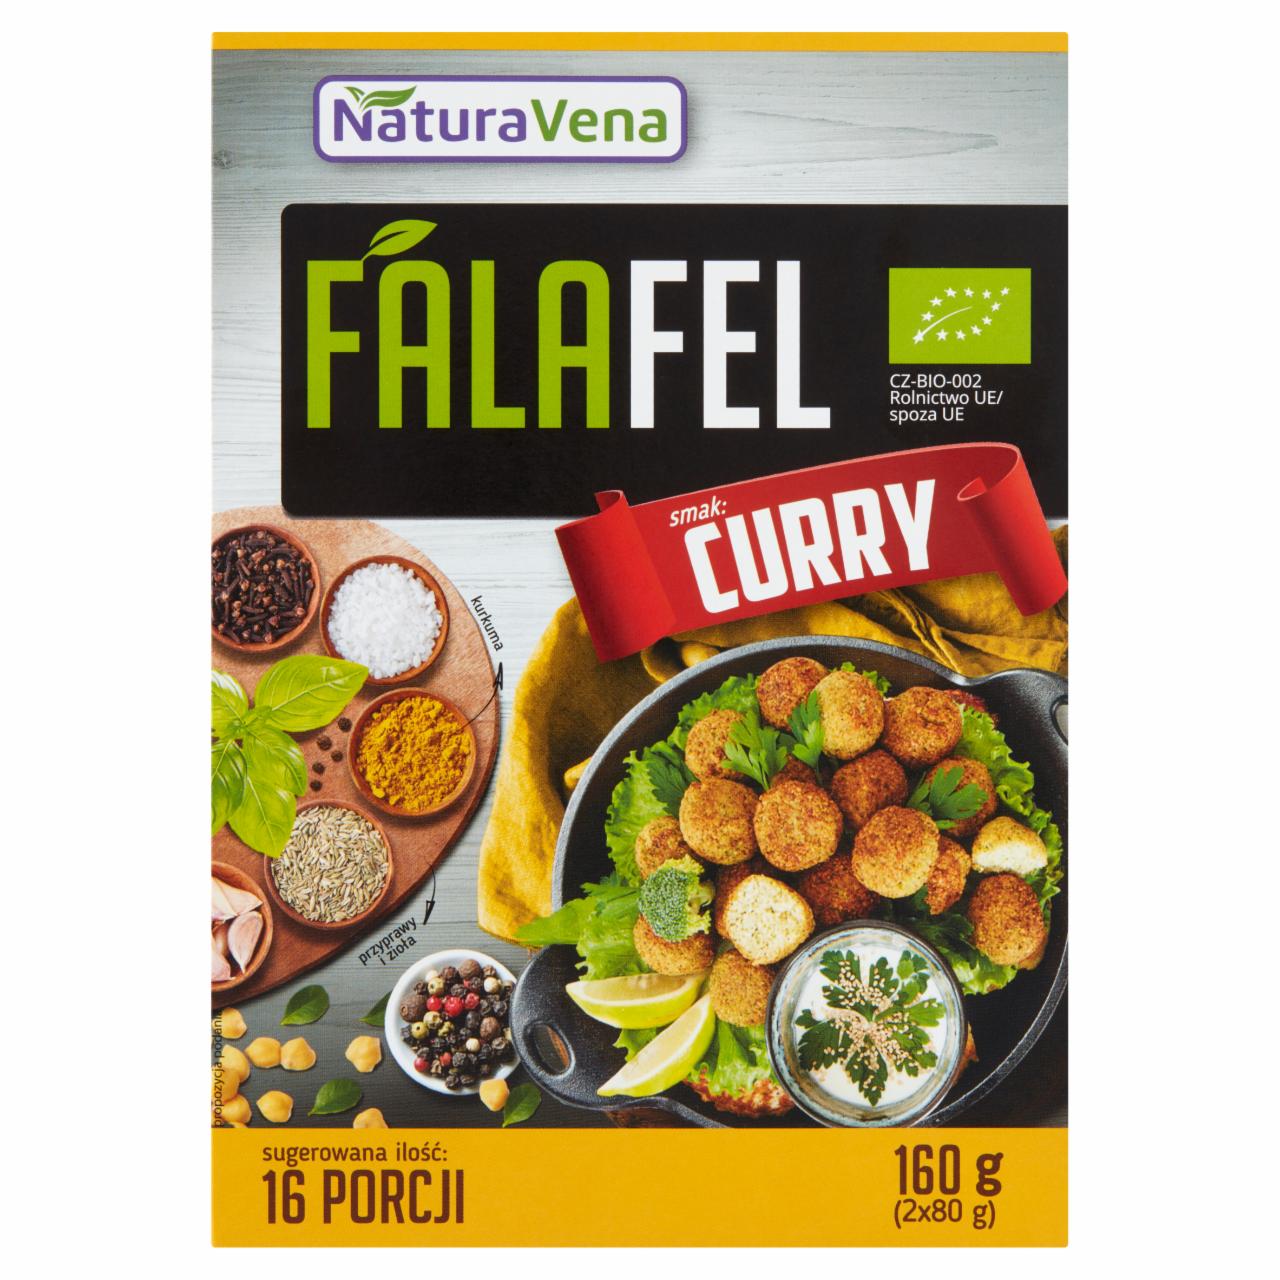 Zdjęcia - NaturaVena Falafel Ekologiczne danie w proszku smak curry 160 g (2 x 80 g)